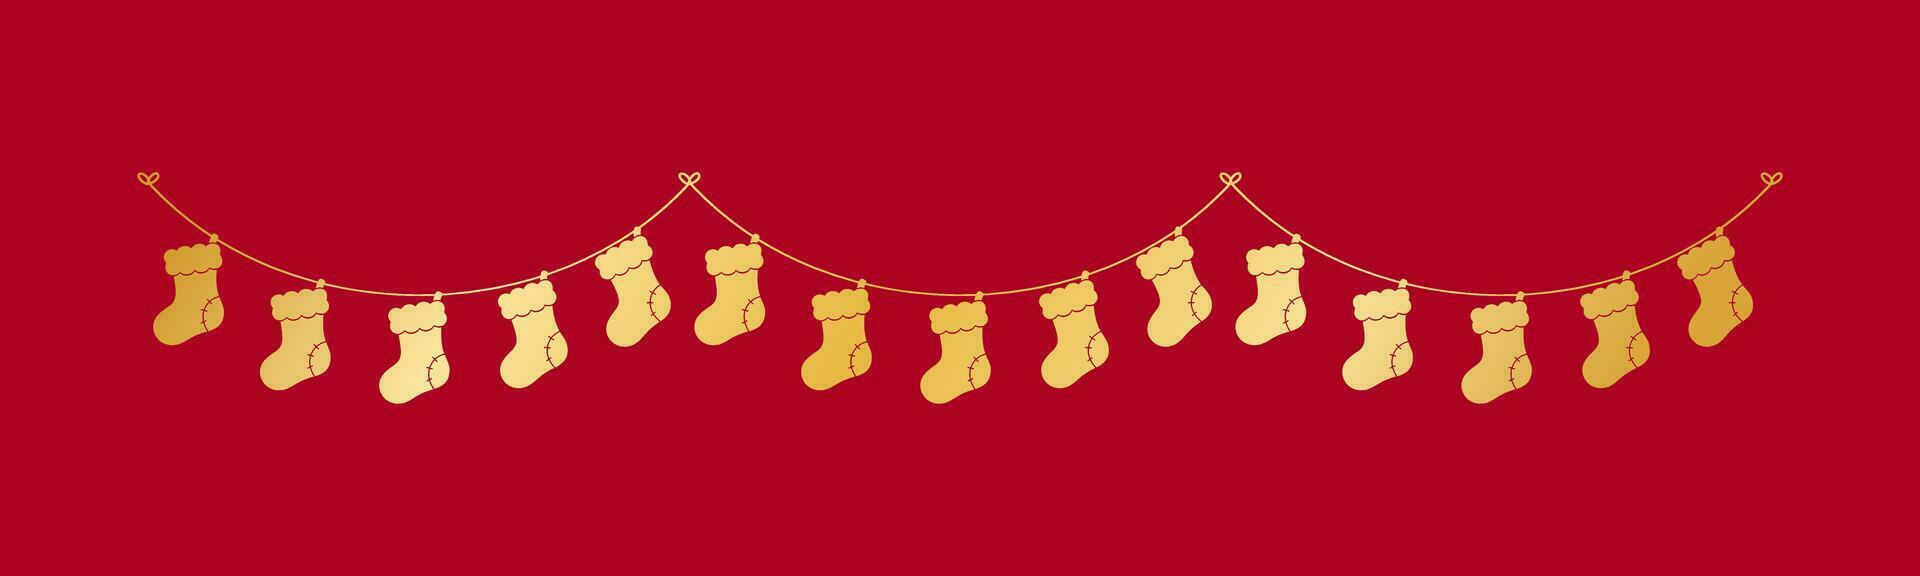 goud Kerstmis kous silhouet slinger vector illustratie, Kerstmis sokken grafiek feestelijk winter vakantie seizoen vlaggedoek